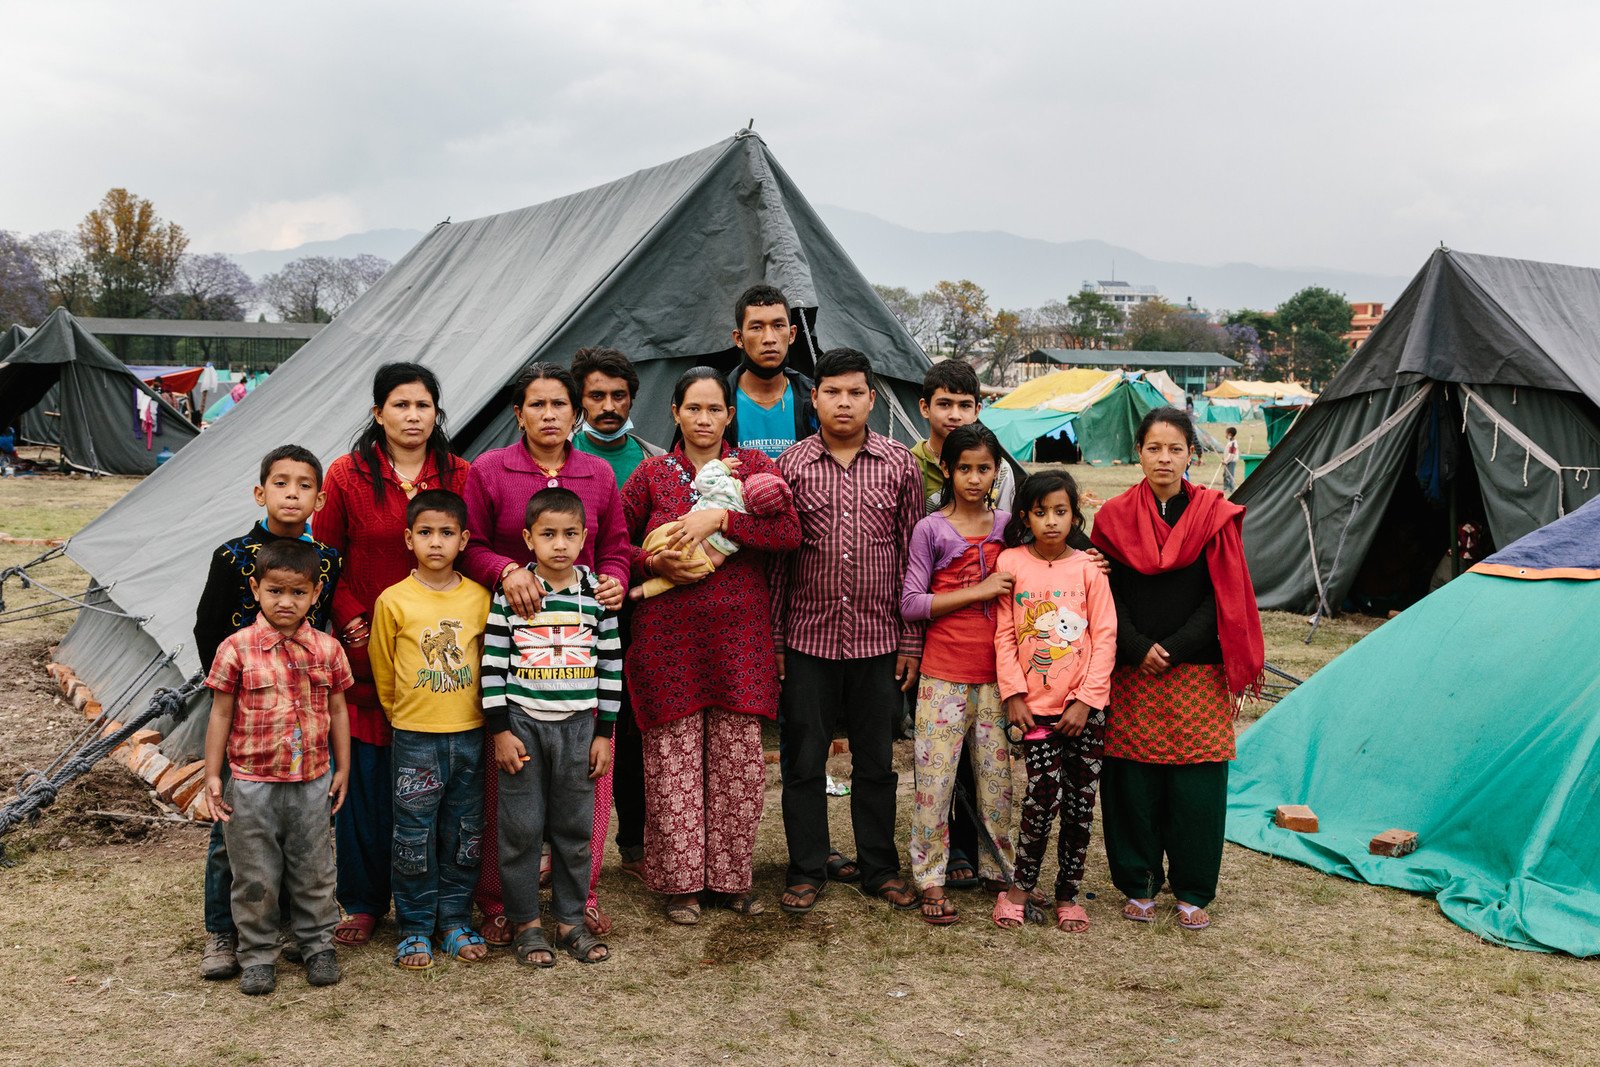 45日大的Hari在地震中逃过一劫，现时一家十五口一同住在帐蓬，在临时安置点生活上仍困难重重。乐施会正在该临时安置点搭建卫生设施。 (摄影: Aubrey Wade / Oxfam)